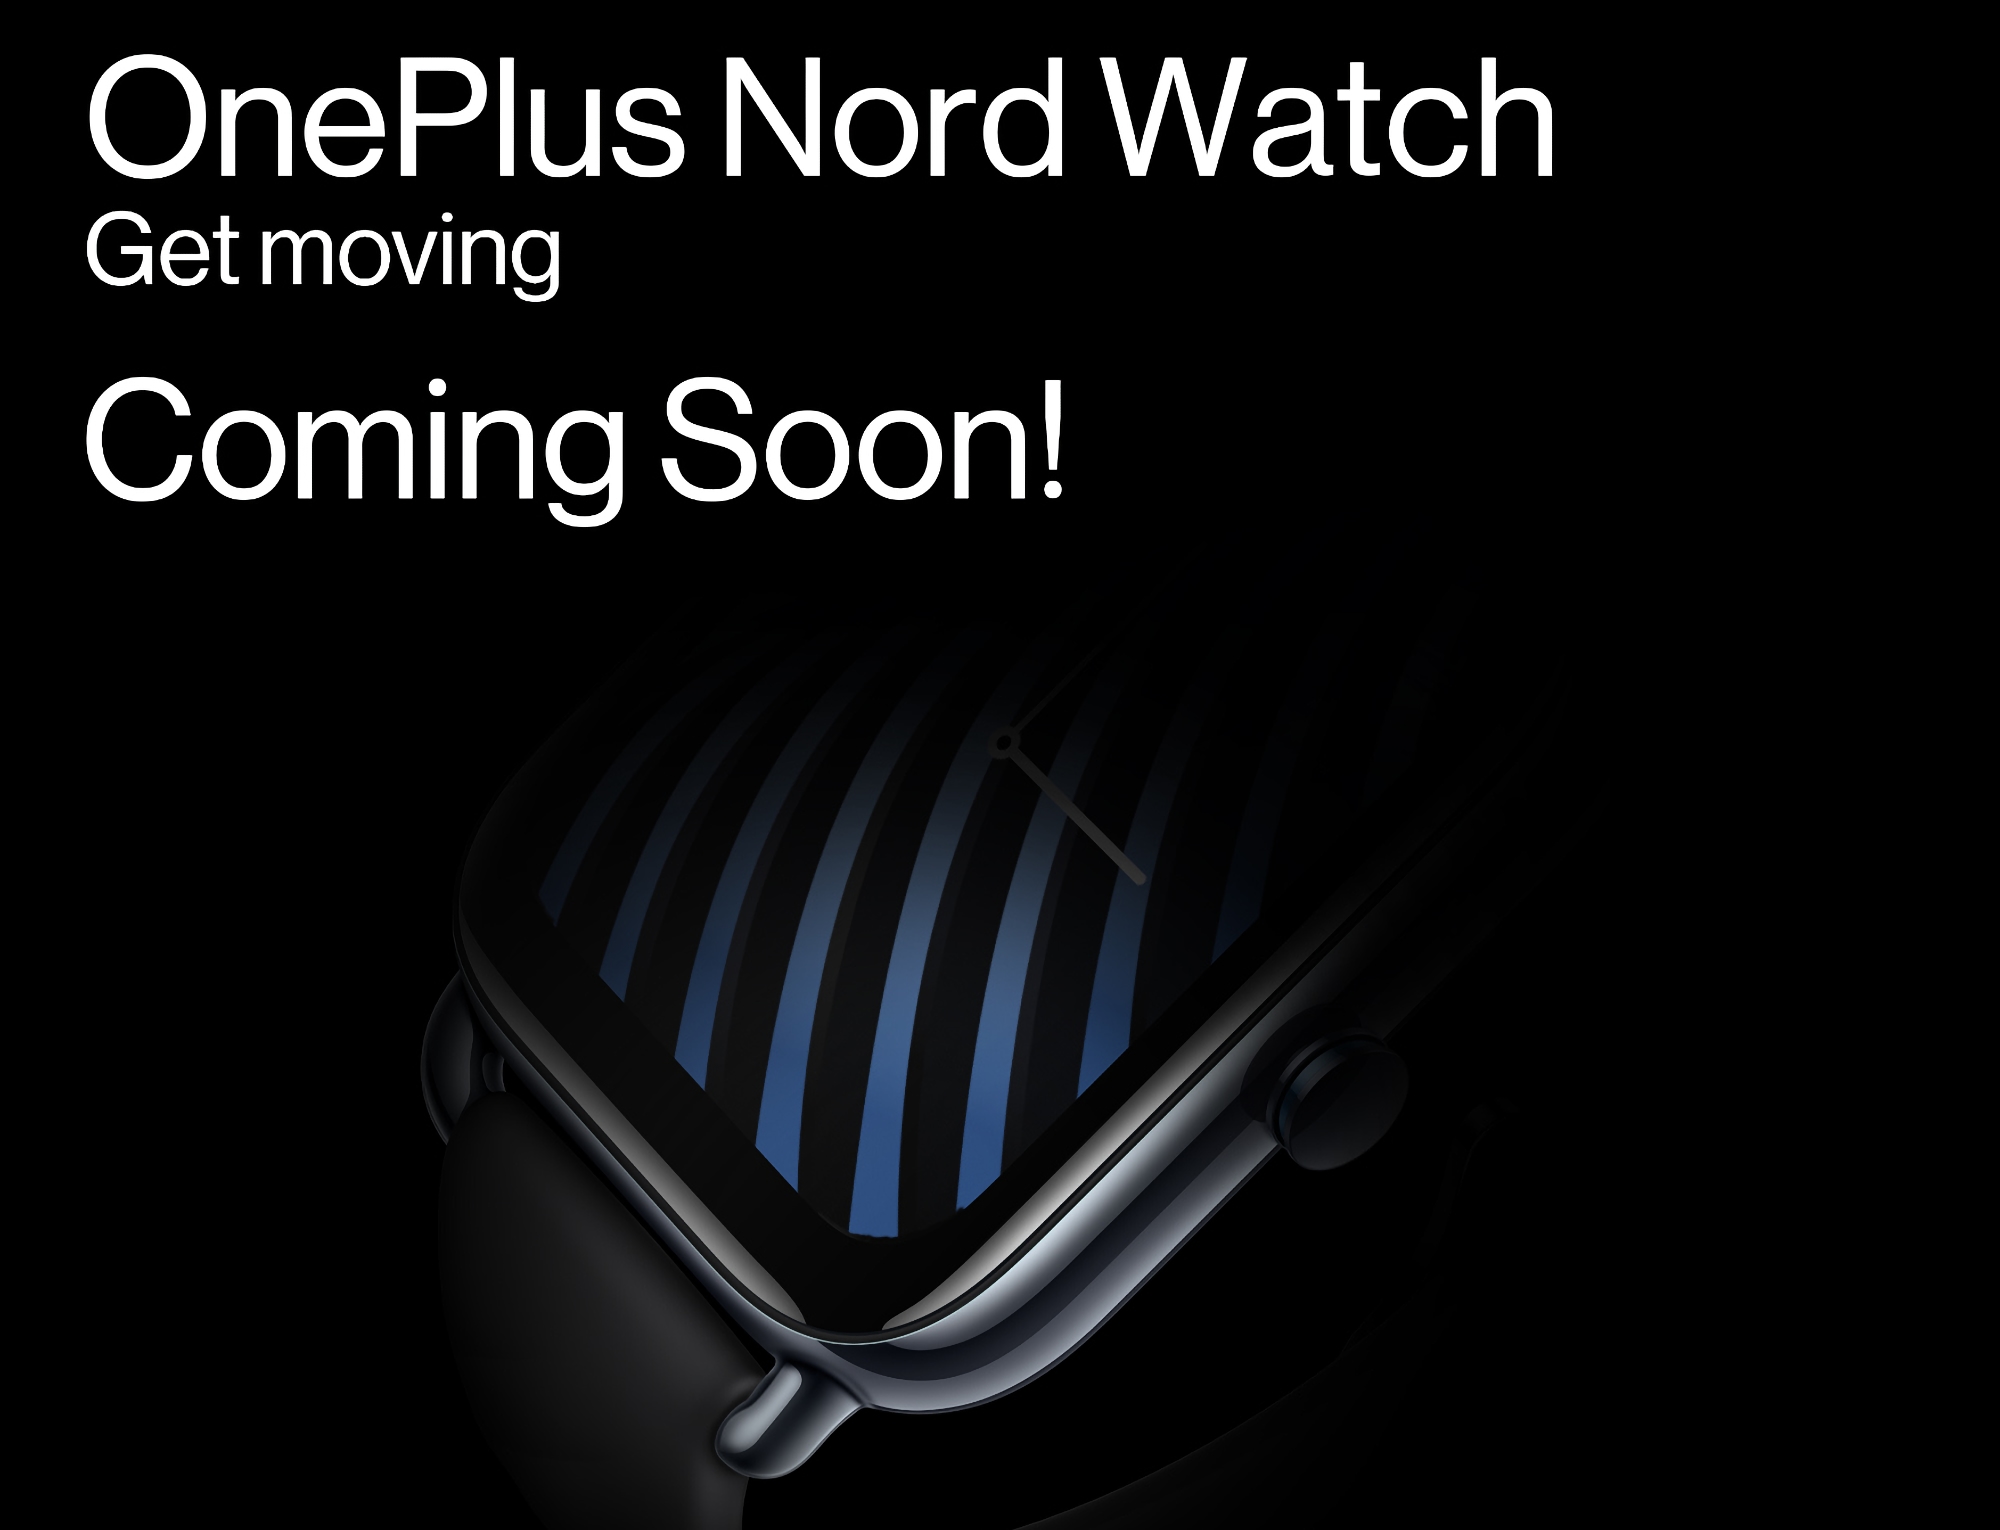 El anuncio está cerca: OnePlus comenzó a burlarse del lanzamiento del smartwatch Nord Watch